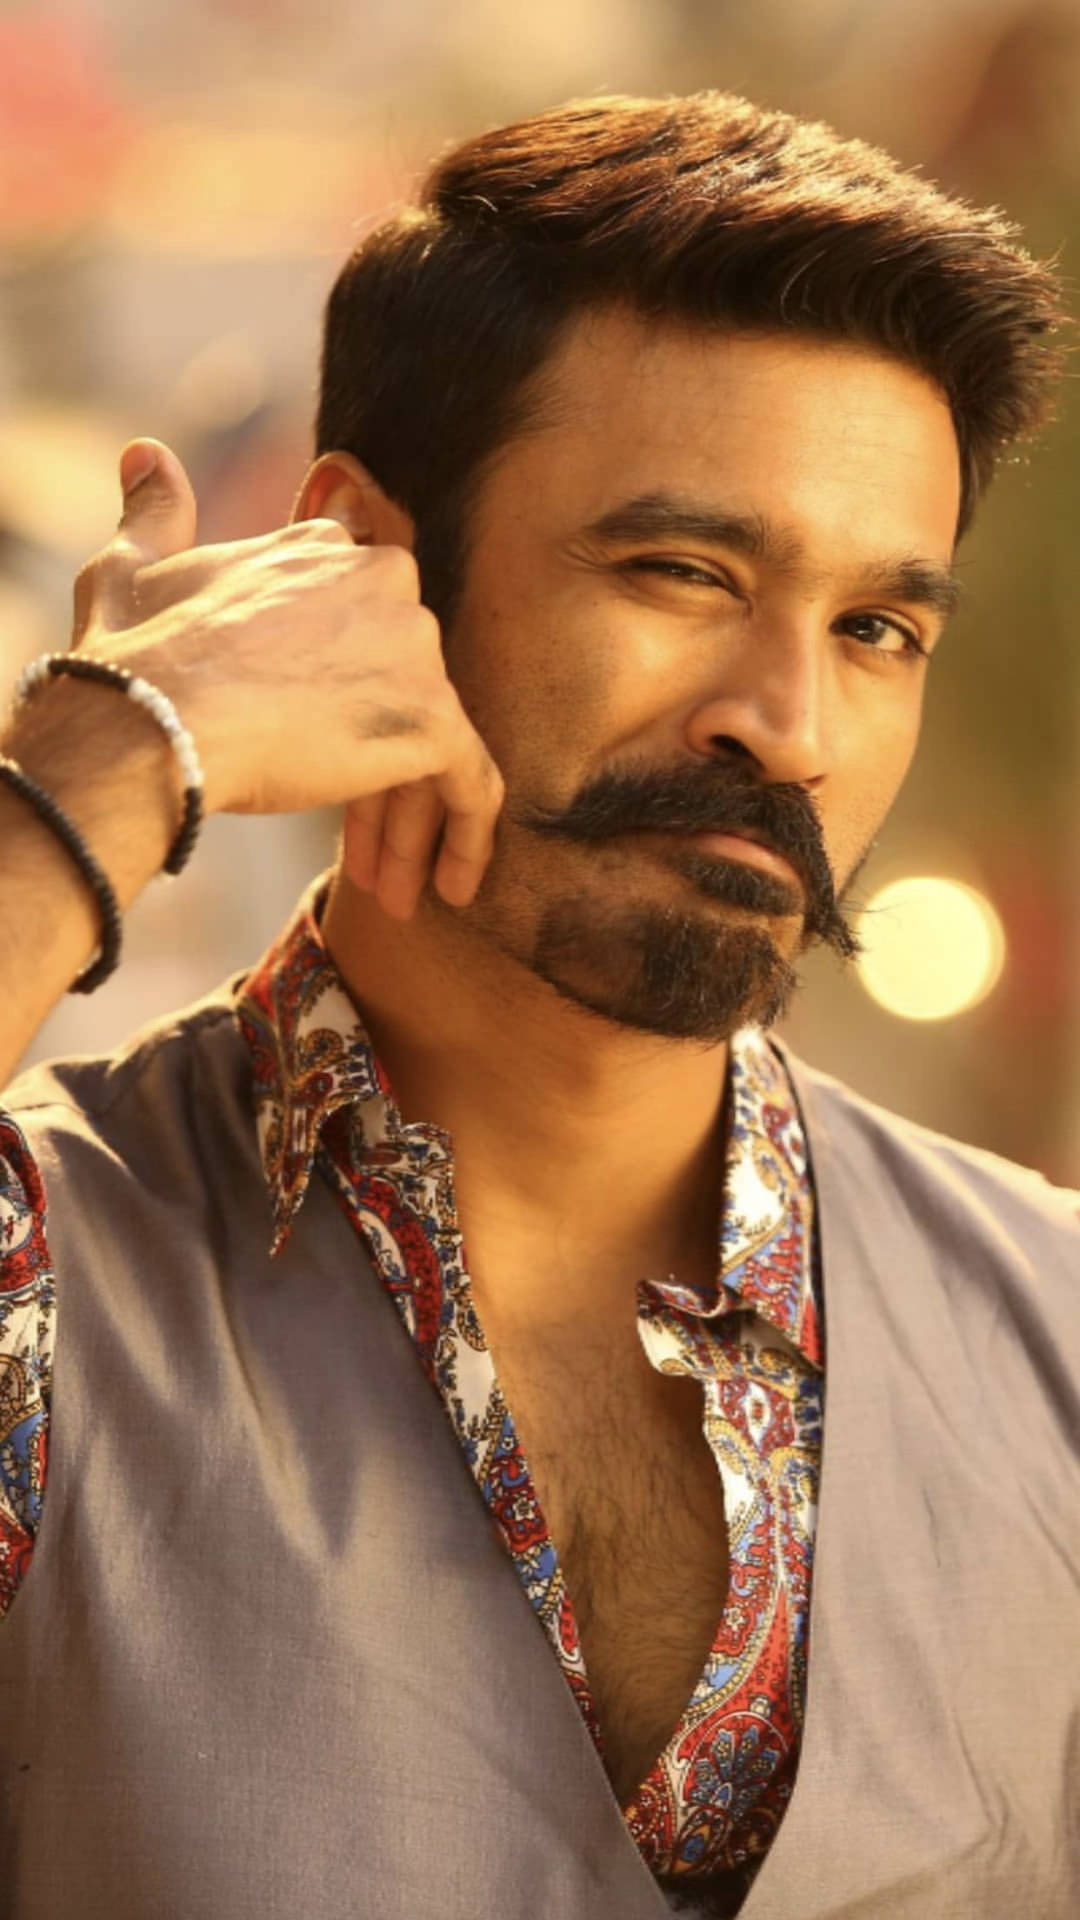 Dhanush med pæn skæg ligner et stort smil. Wallpaper